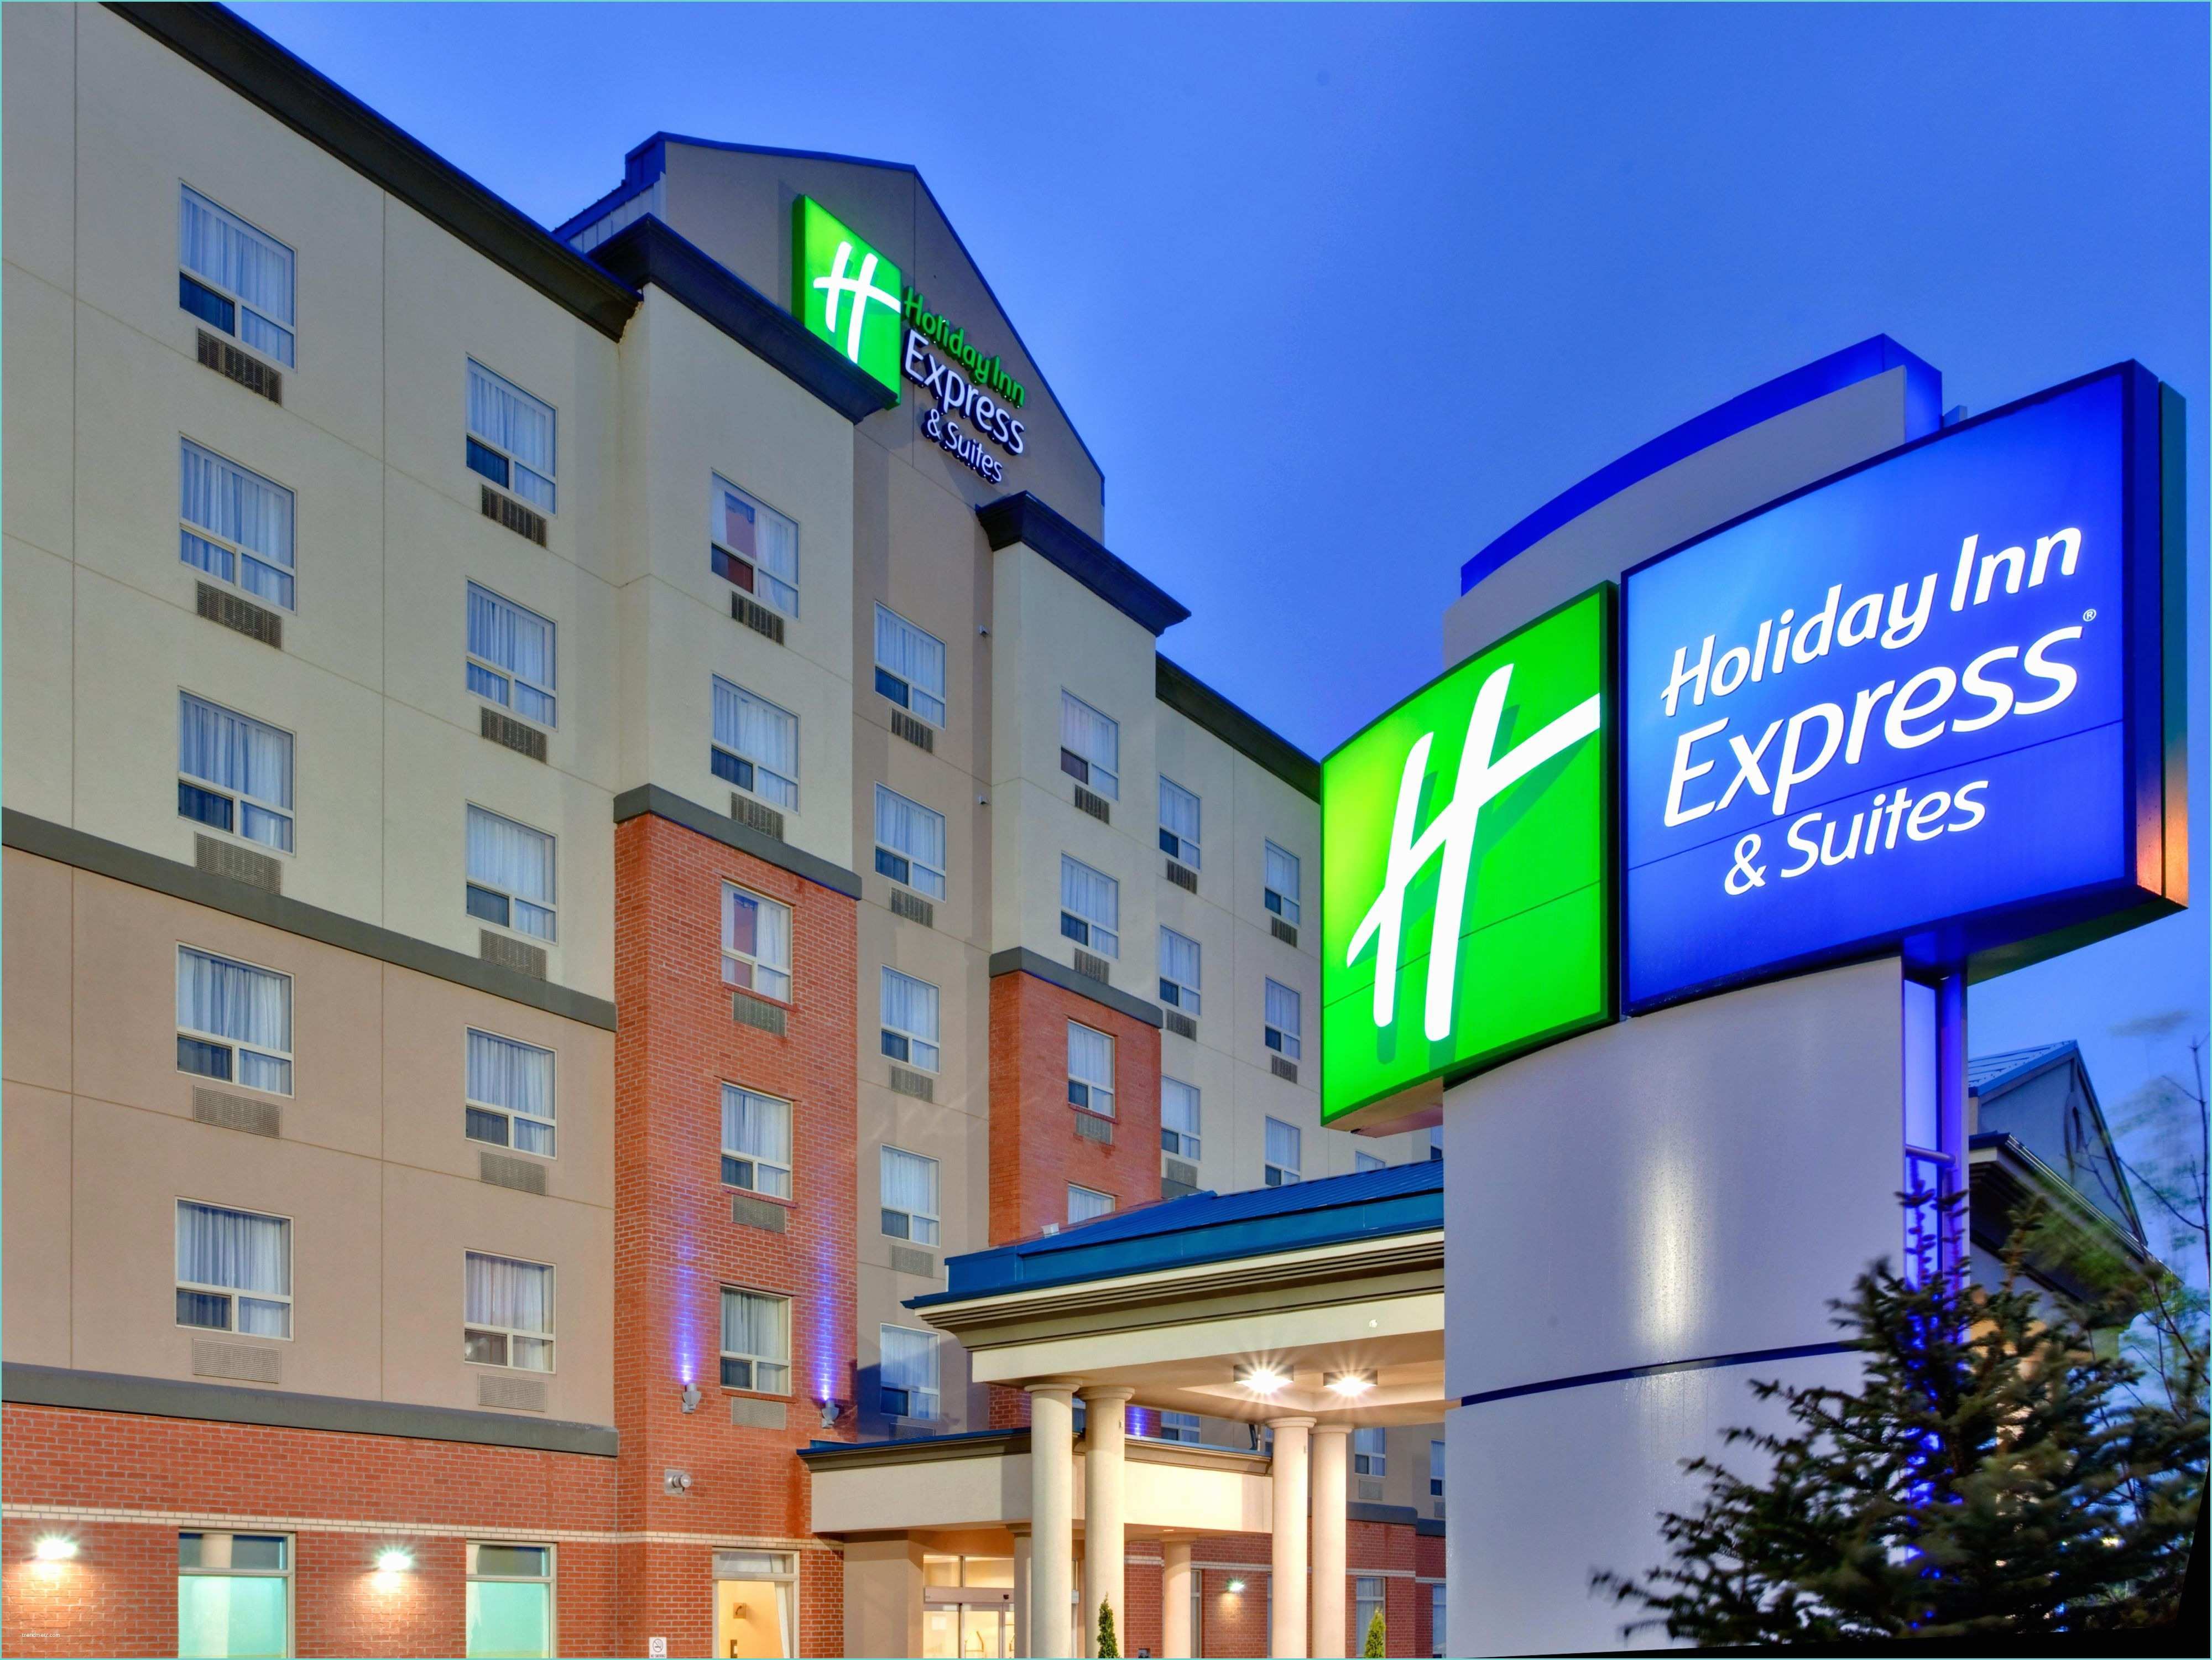 Seven Hotel Suite Lovez Vous Holiday Inn Express & Suites Edmonton south Hotel